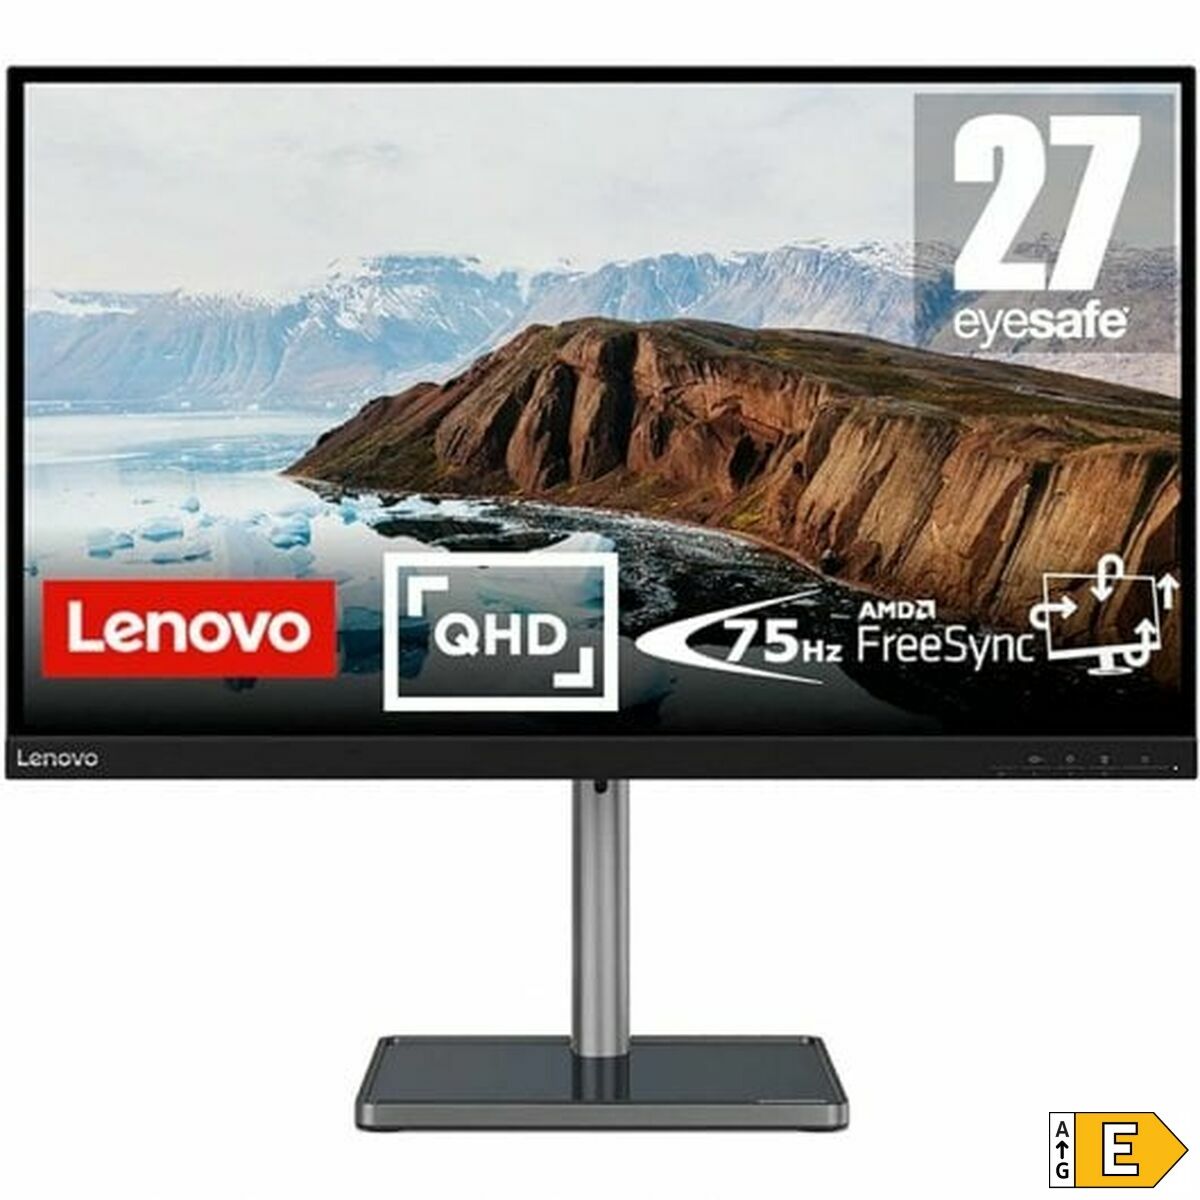 Monitors Lenovo L27q-38 27" LED VA LCD 75 Hz